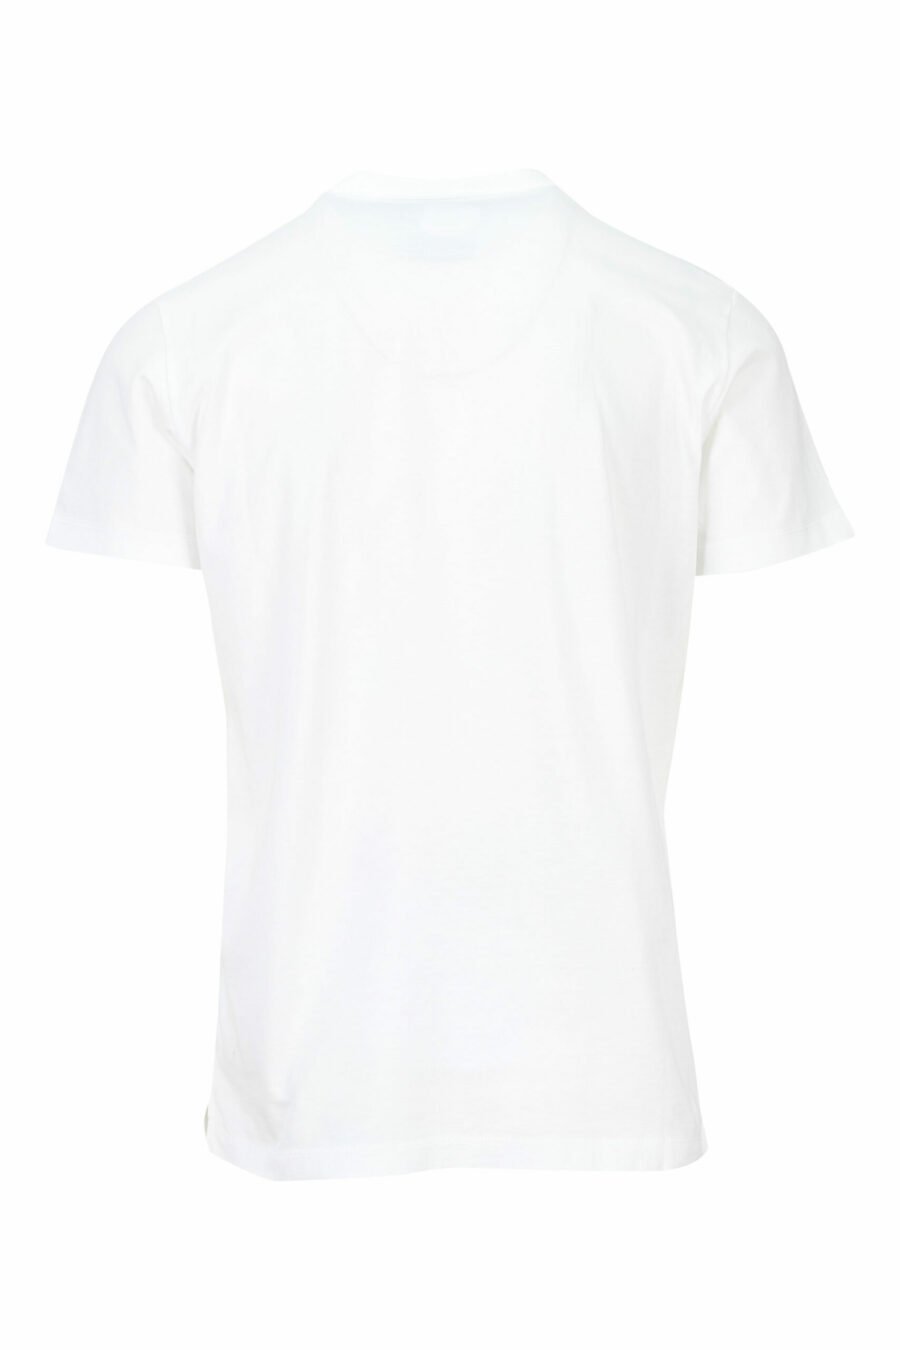 Camiseta blanca con maxilogo "college" azul - 8054148086442 1 scaled